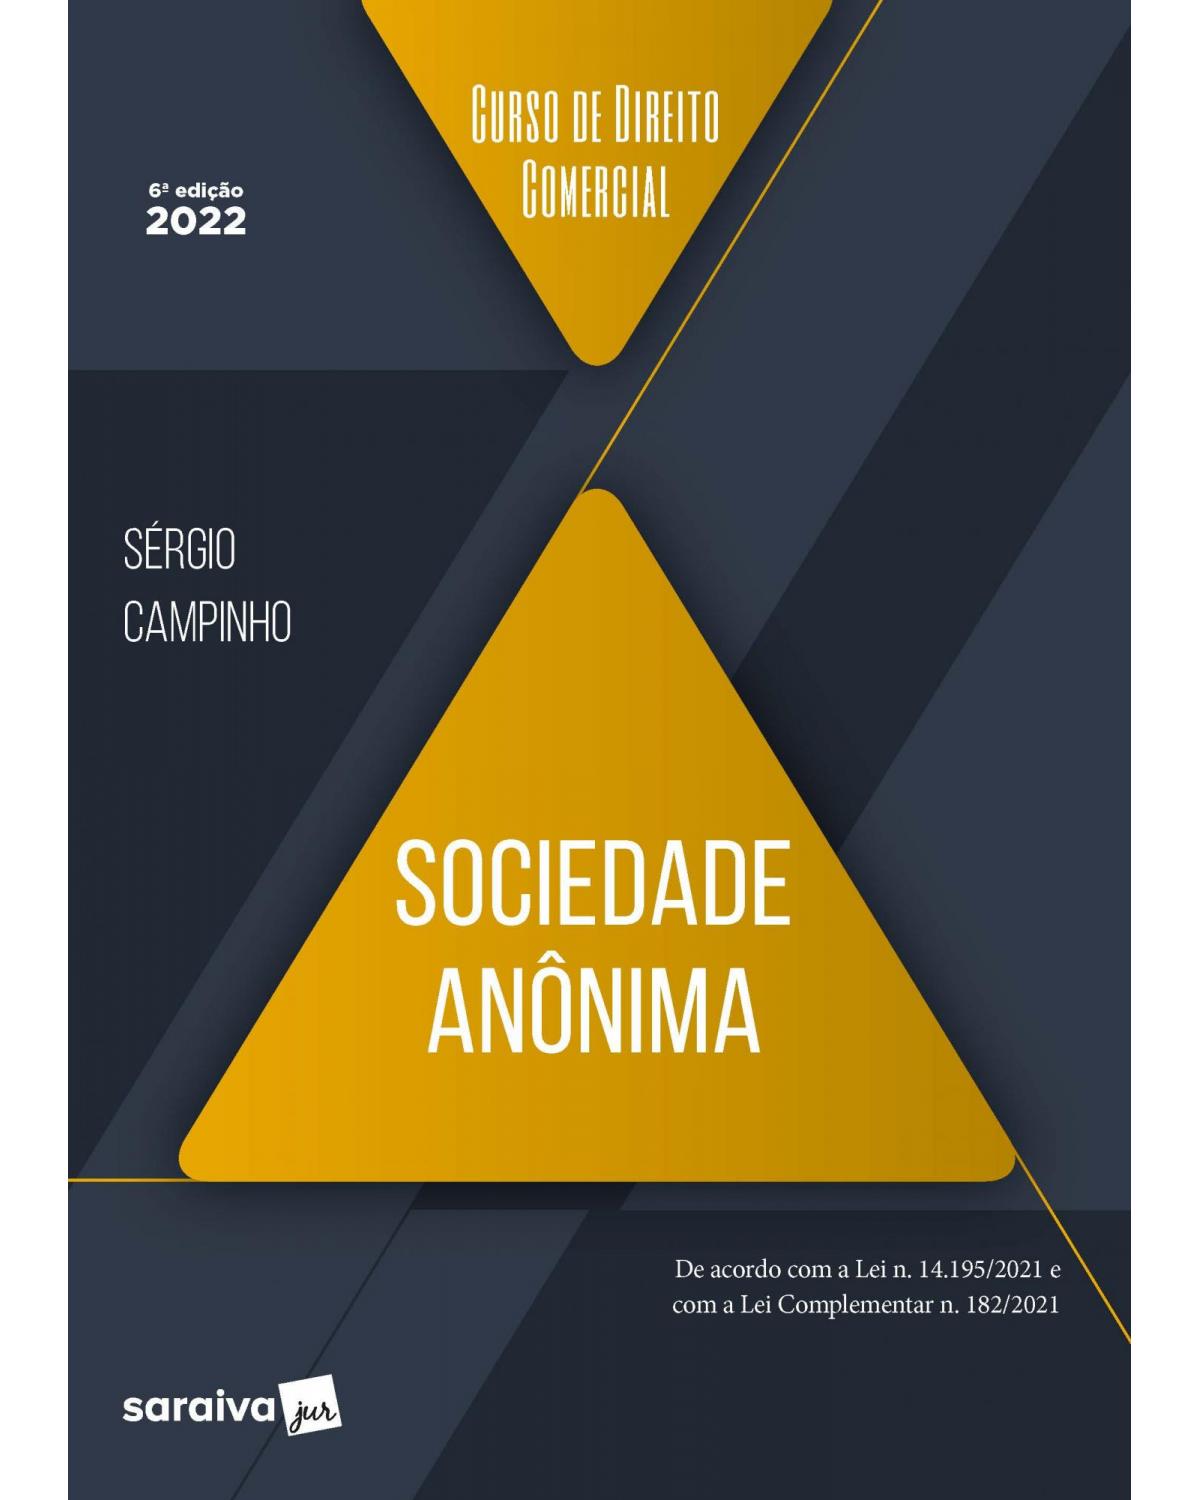 Curso de direito comercial - Sociedade anônima - 6ª Edição | 2022